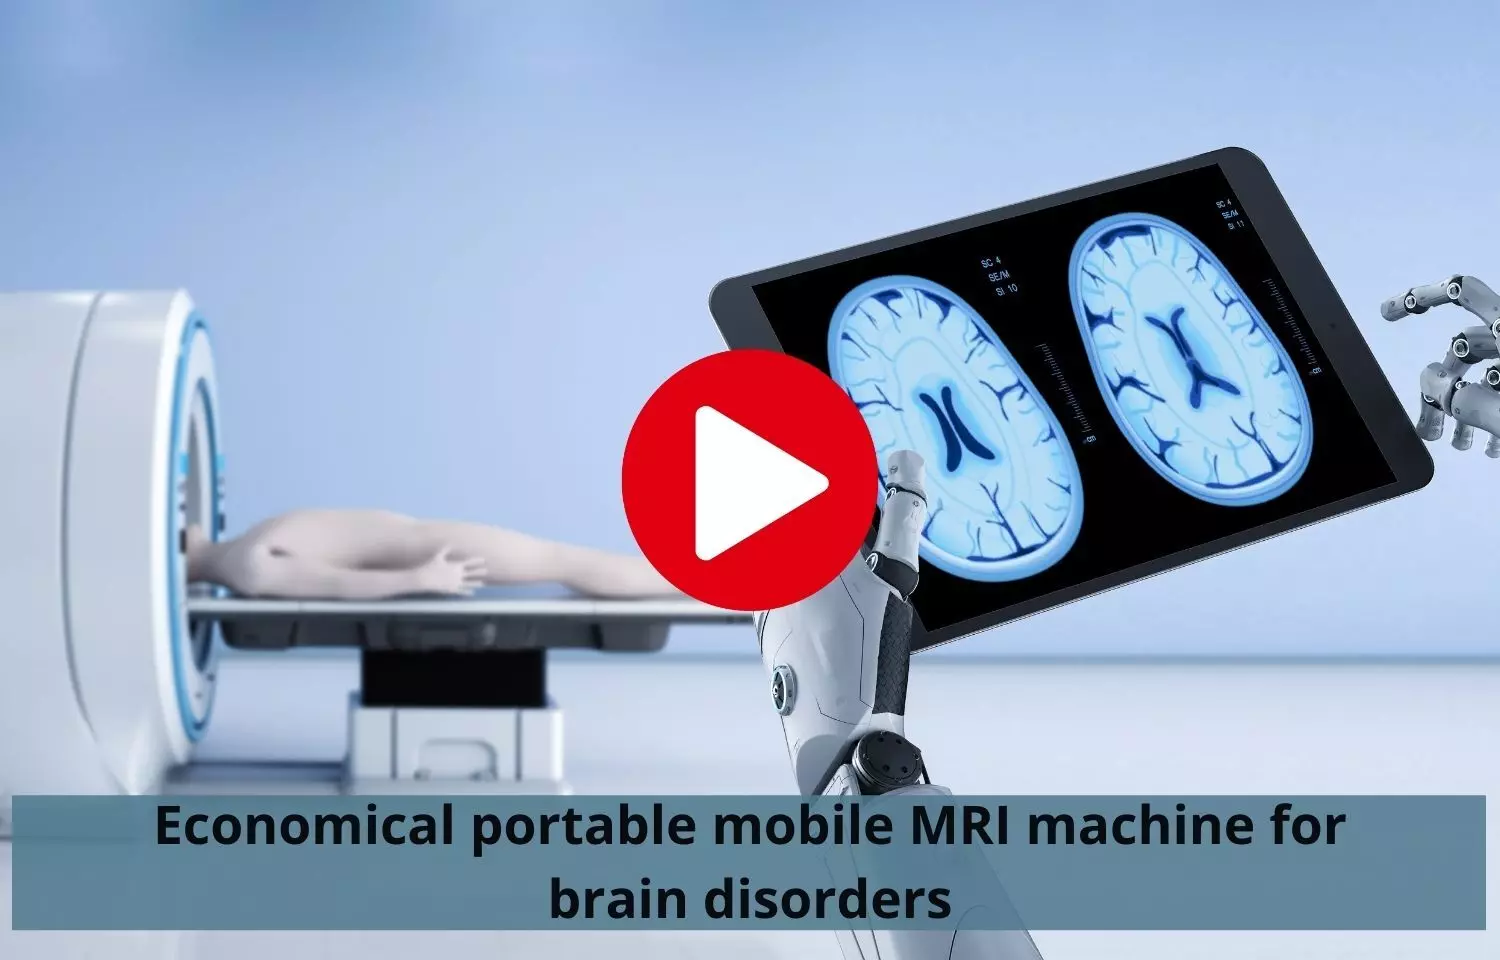 Researchers develop economical mobile MRI machine for brain disorders